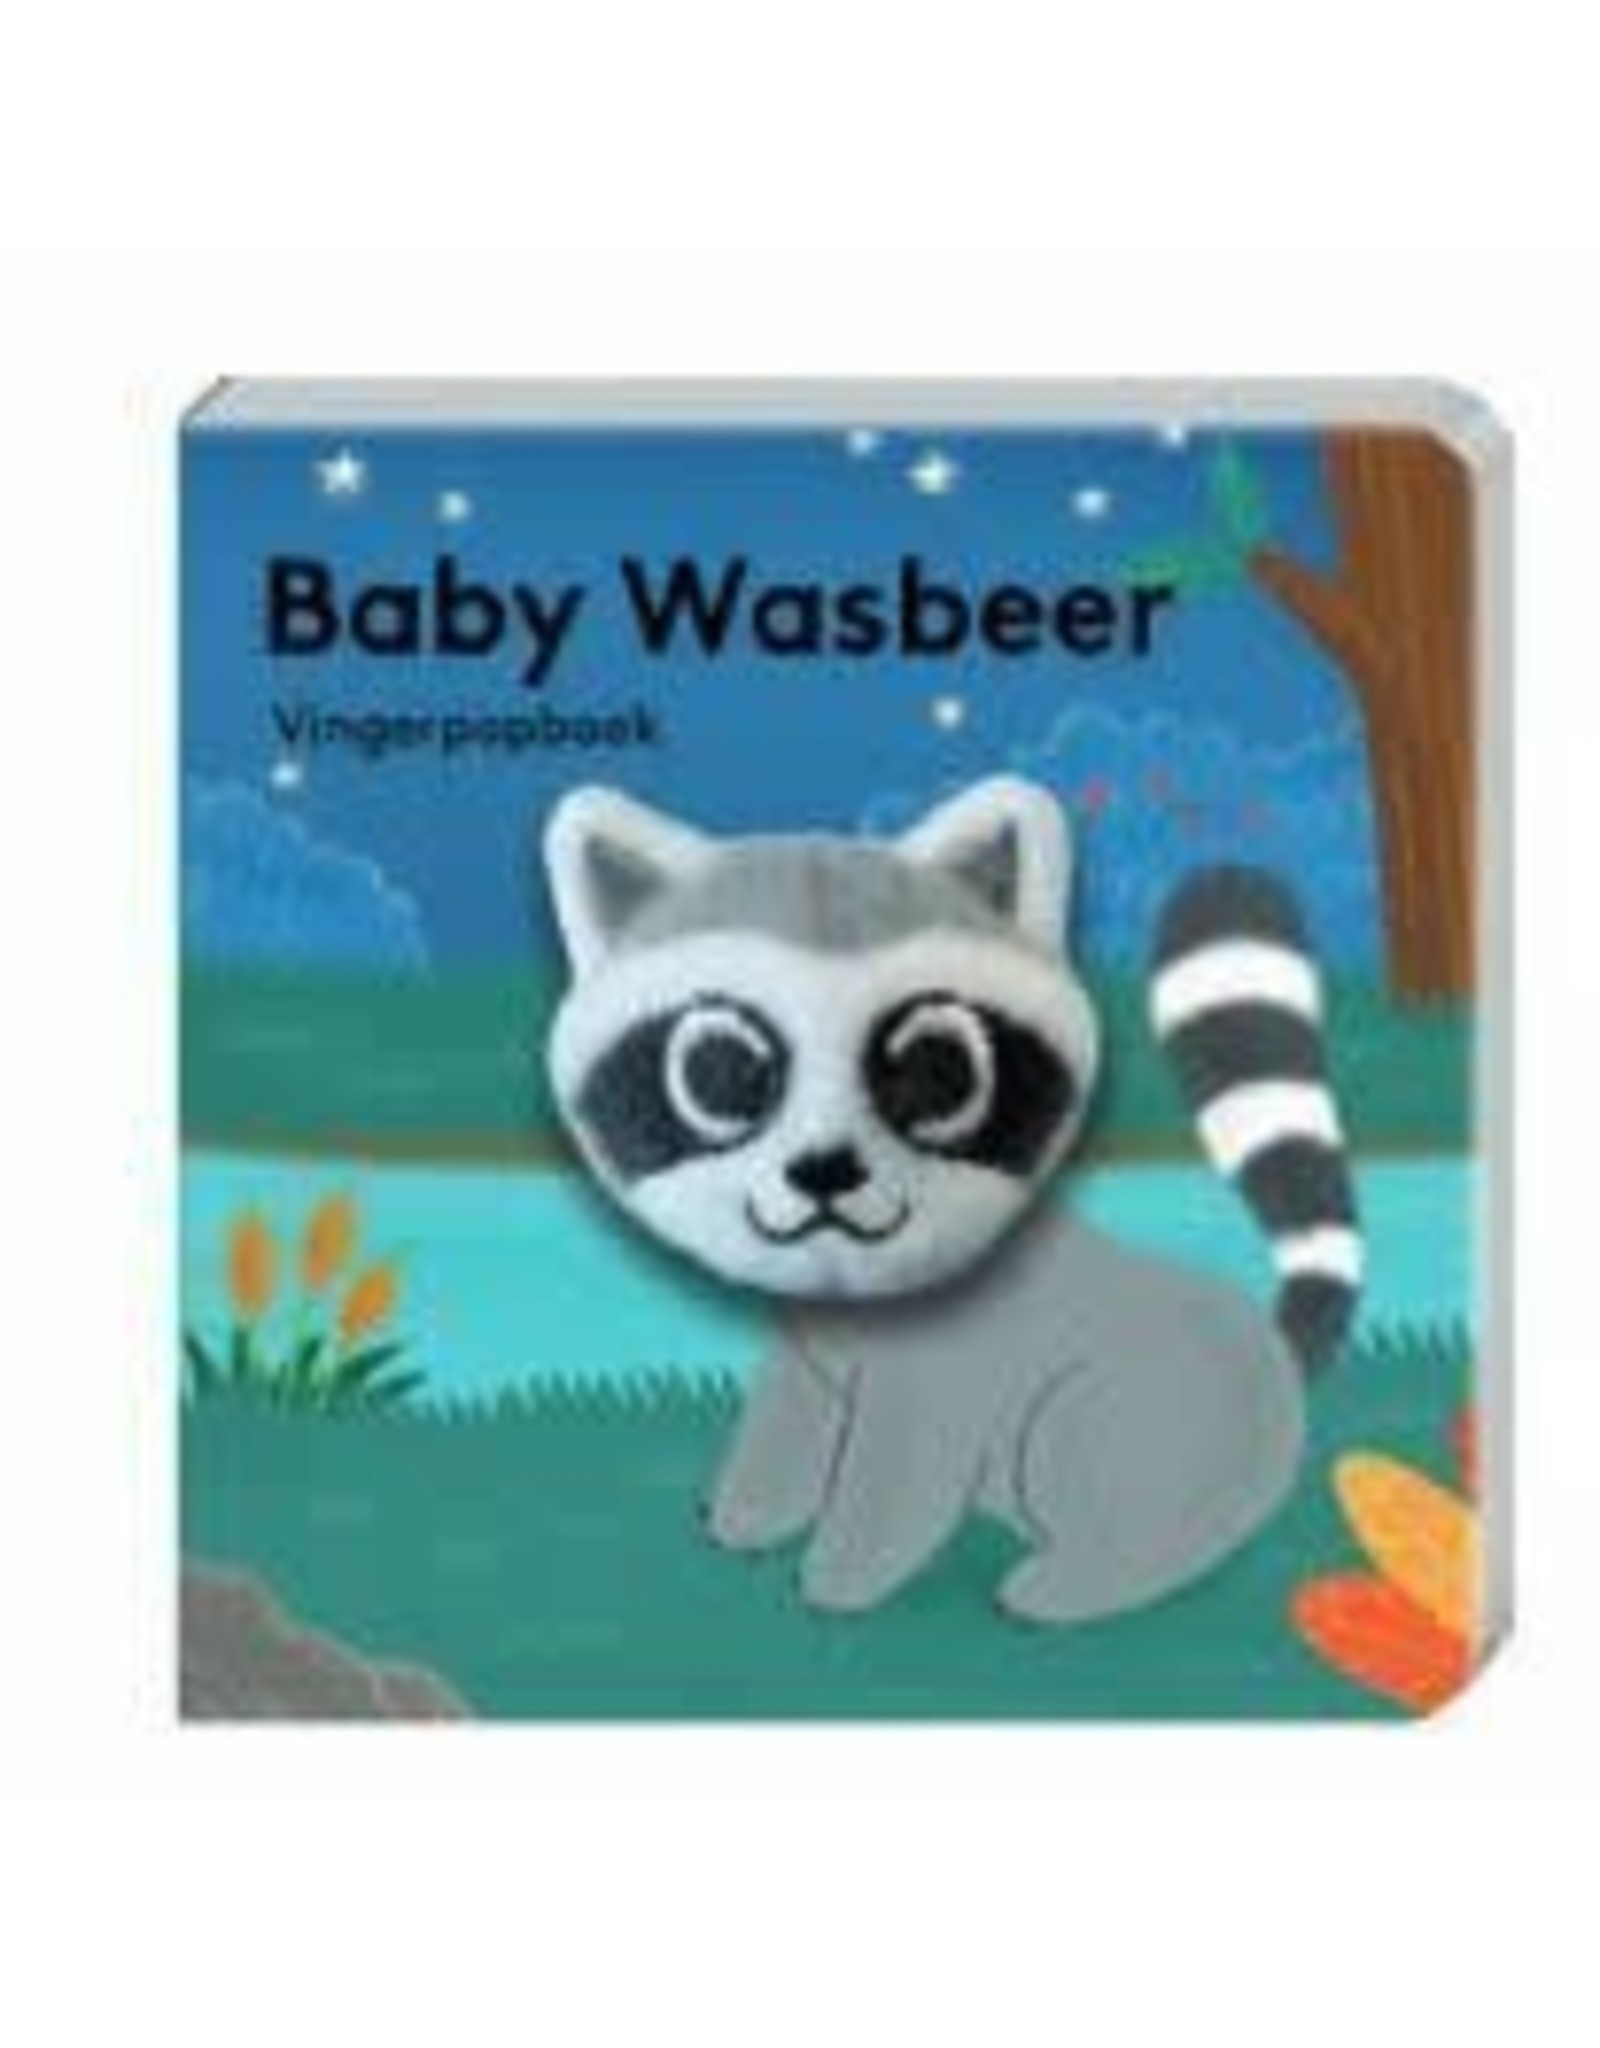 Vingerpopboek - Baby Wasbeer